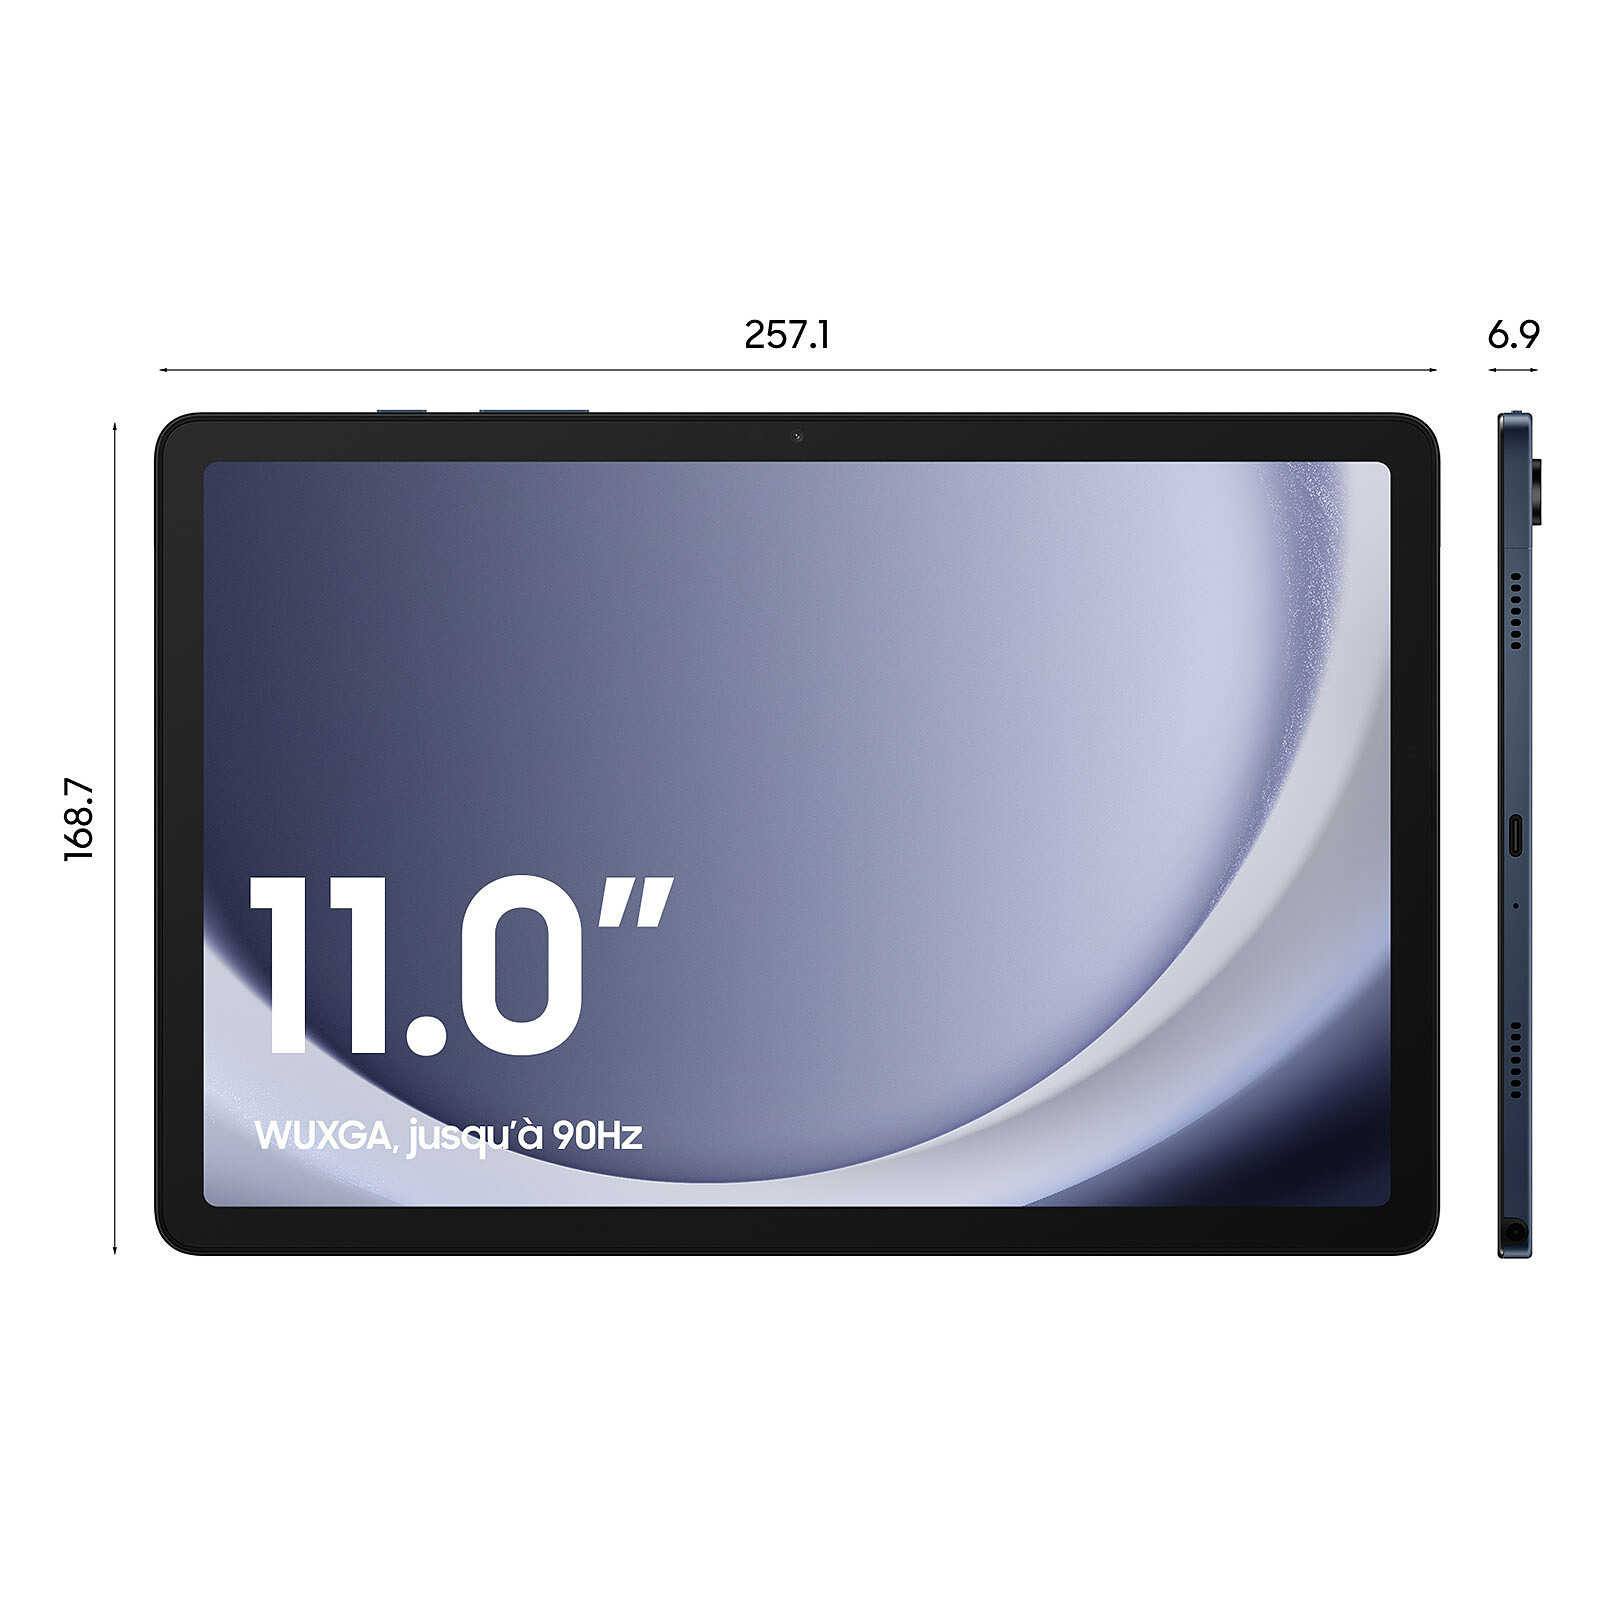 Acheter un étuis pour votre Samsung Galaxy Tab A 10.1 2019 sur